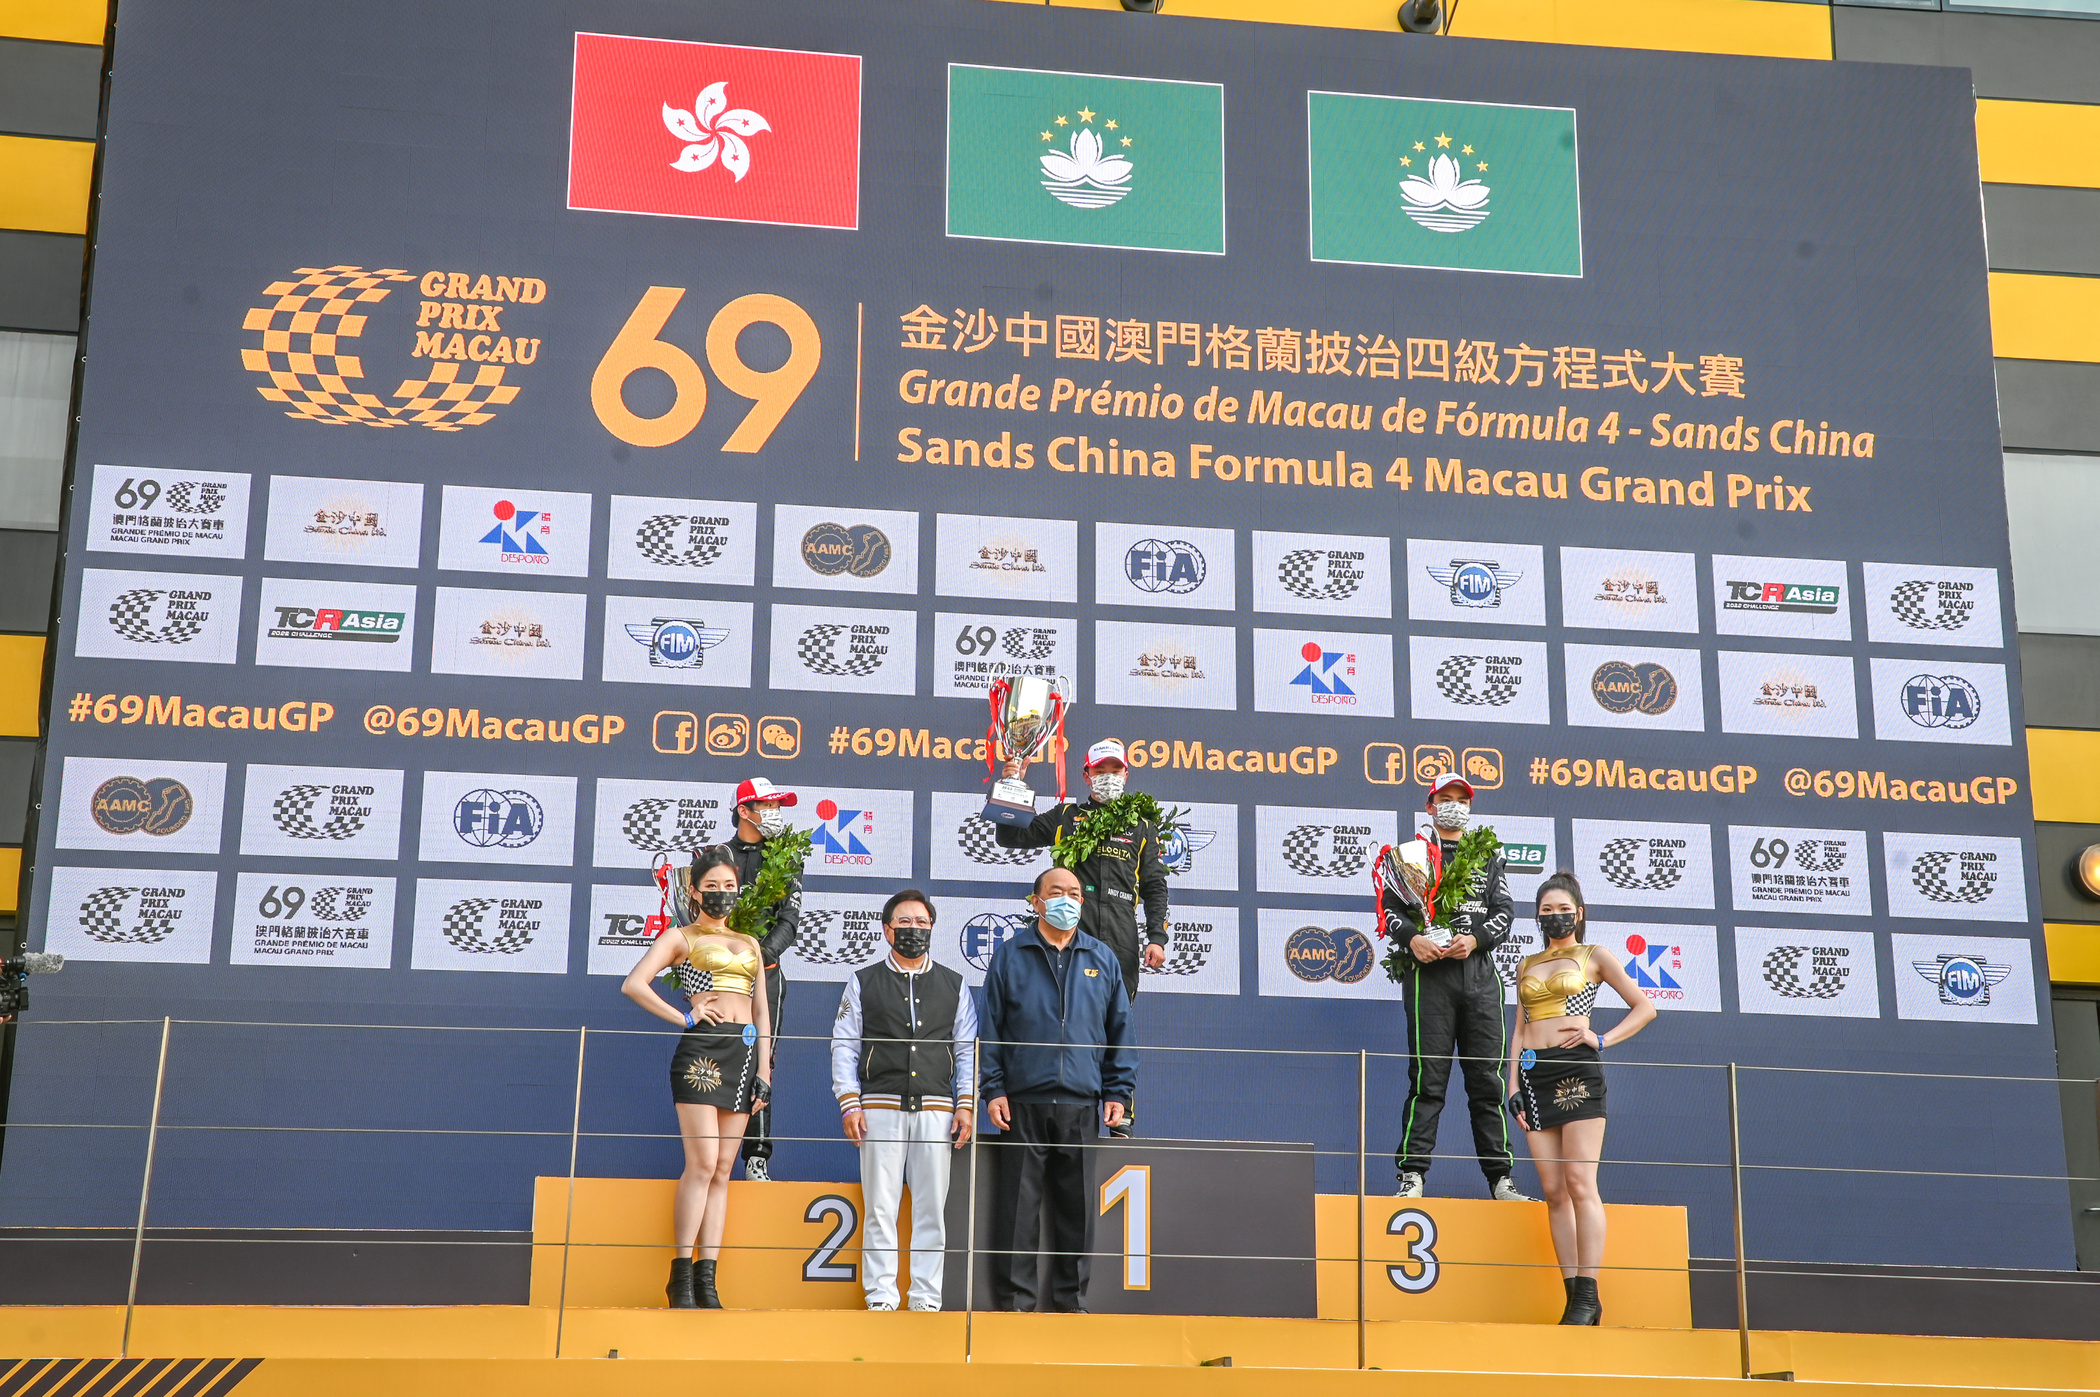 Award presentation ceremony for Formula 4 Macau Grand Prix of the 69th Macau Grand Prix